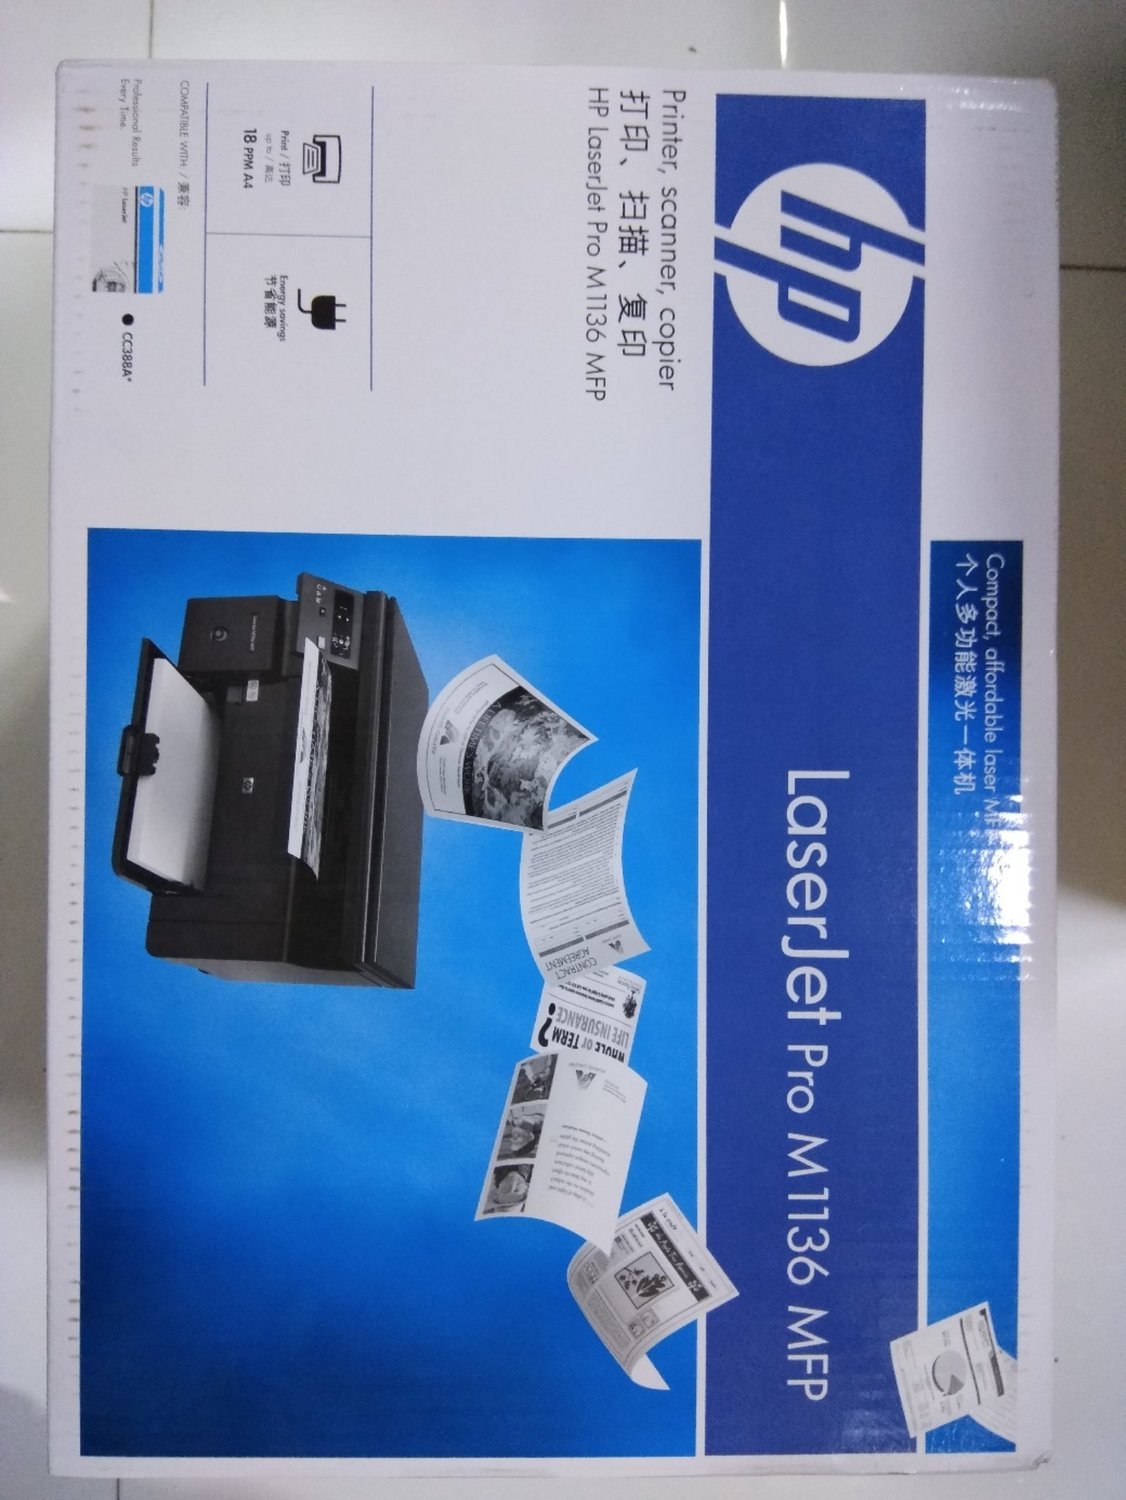 Hp M1136 Laserjet Multi Function Printer Rs 12150